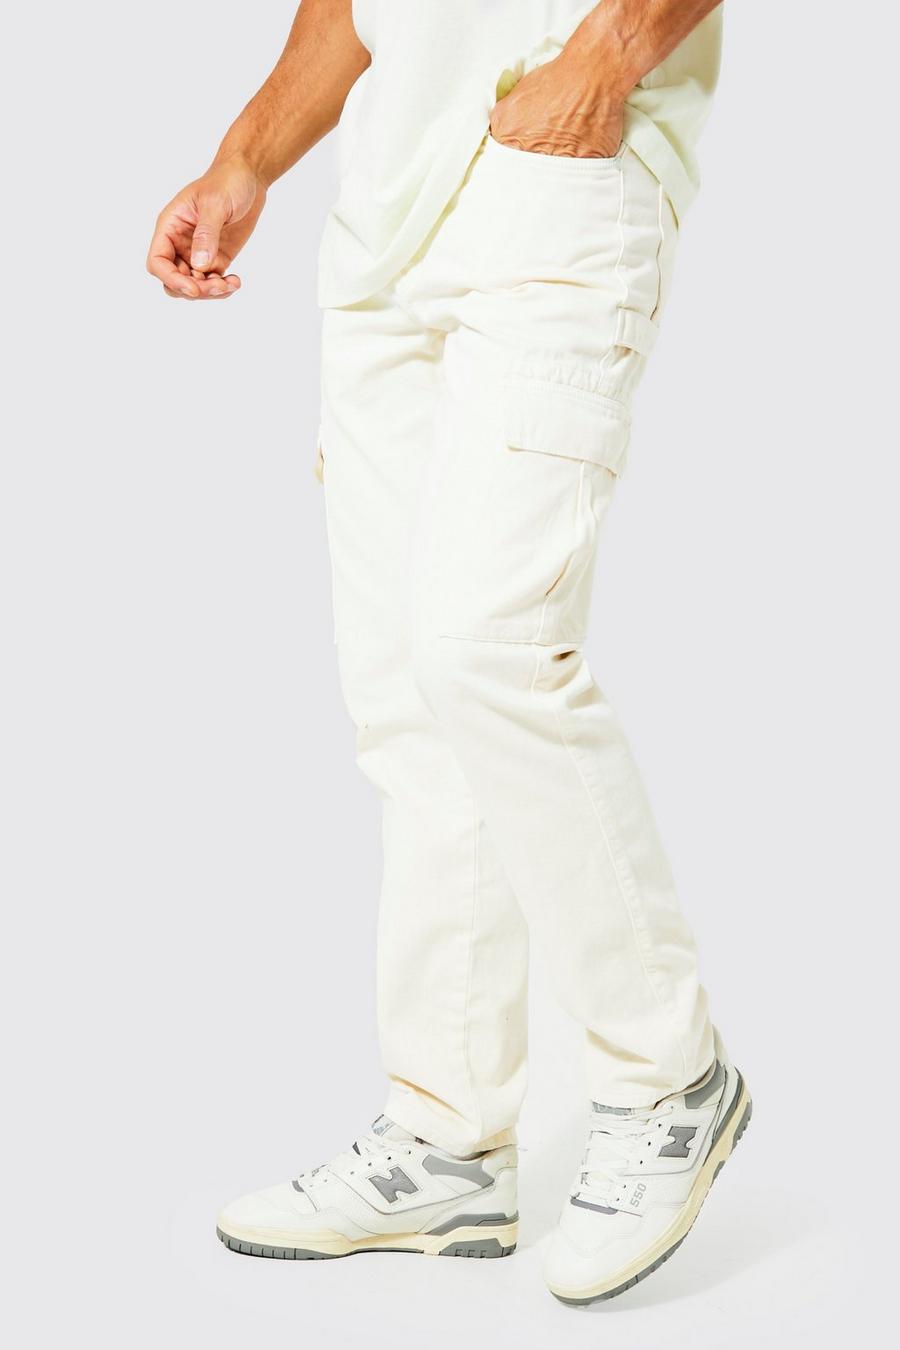 שמנת bianco ג'ינס דגמ'ח בסגנון נגרים ובגזרה ישרה, לגברים גבוהים